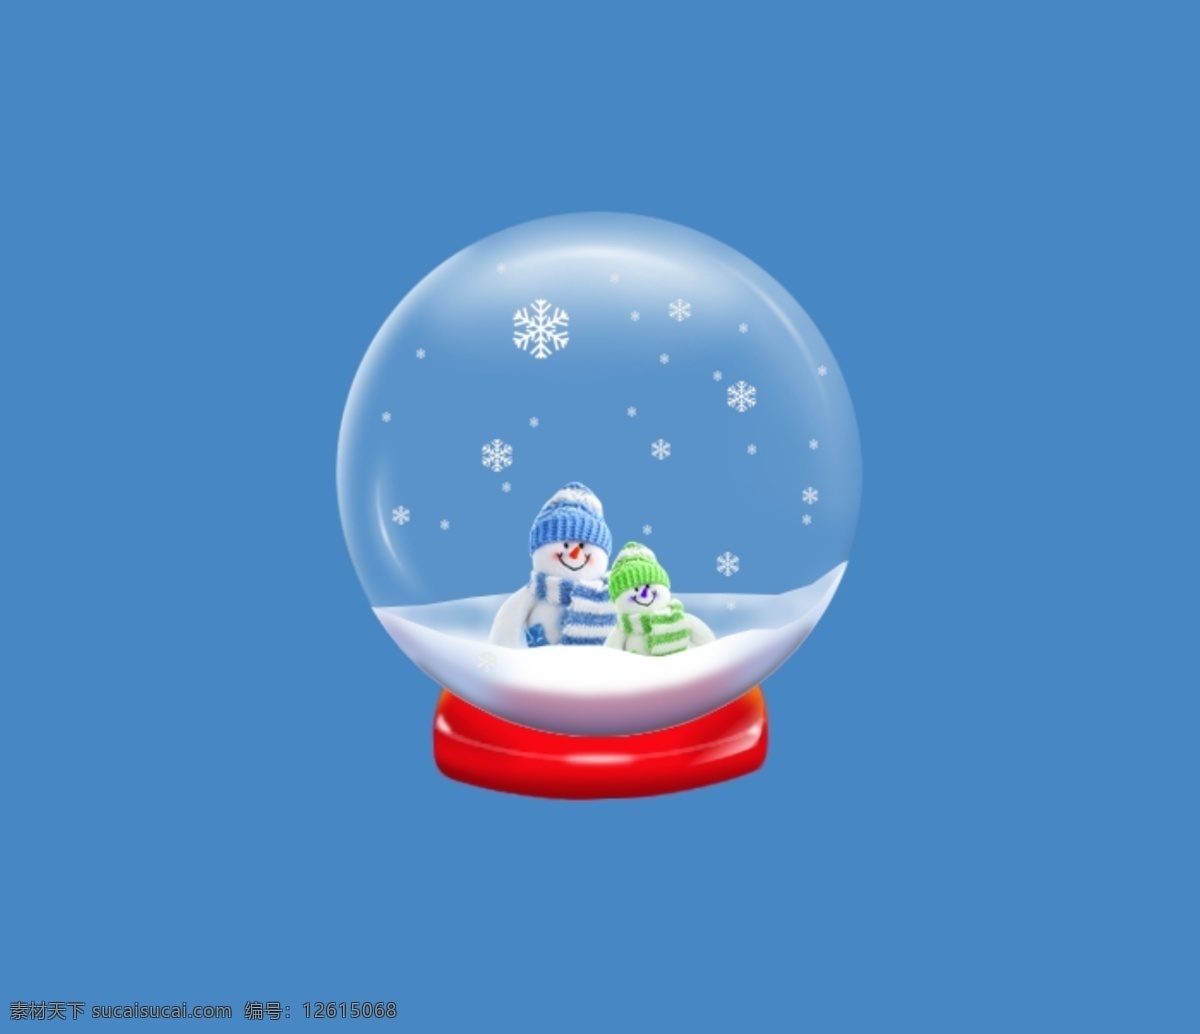 雪人 雪球 水晶球 设计原稿 ps 工业设计 生活百科 生活用品